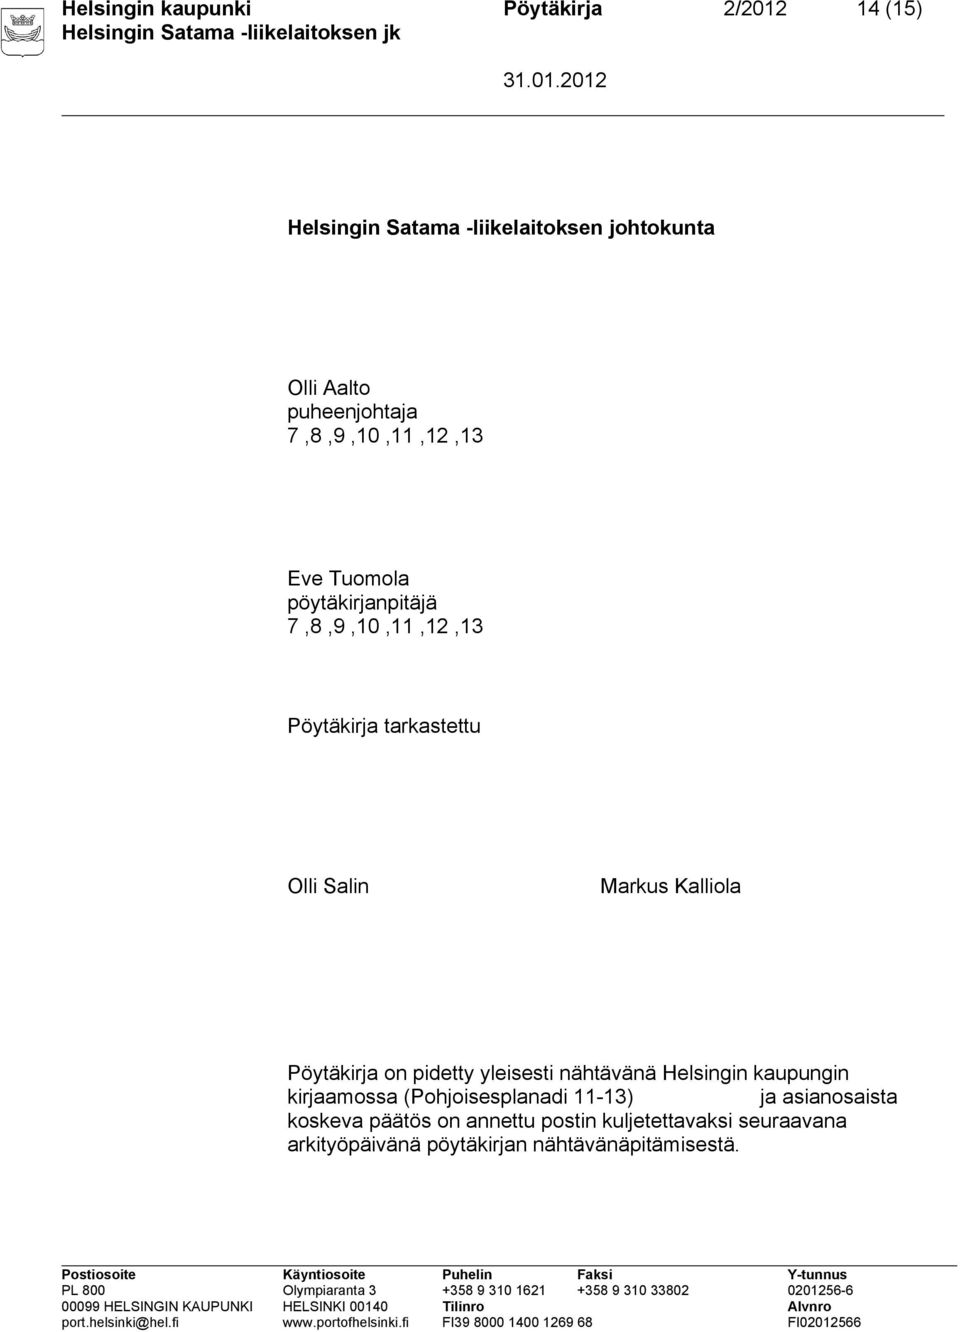 Kalliola Pöytäkirja on pidetty yleisesti nähtävänä Helsingin kaupungin kirjaamossa (Pohjoisesplanadi 11-13) ja